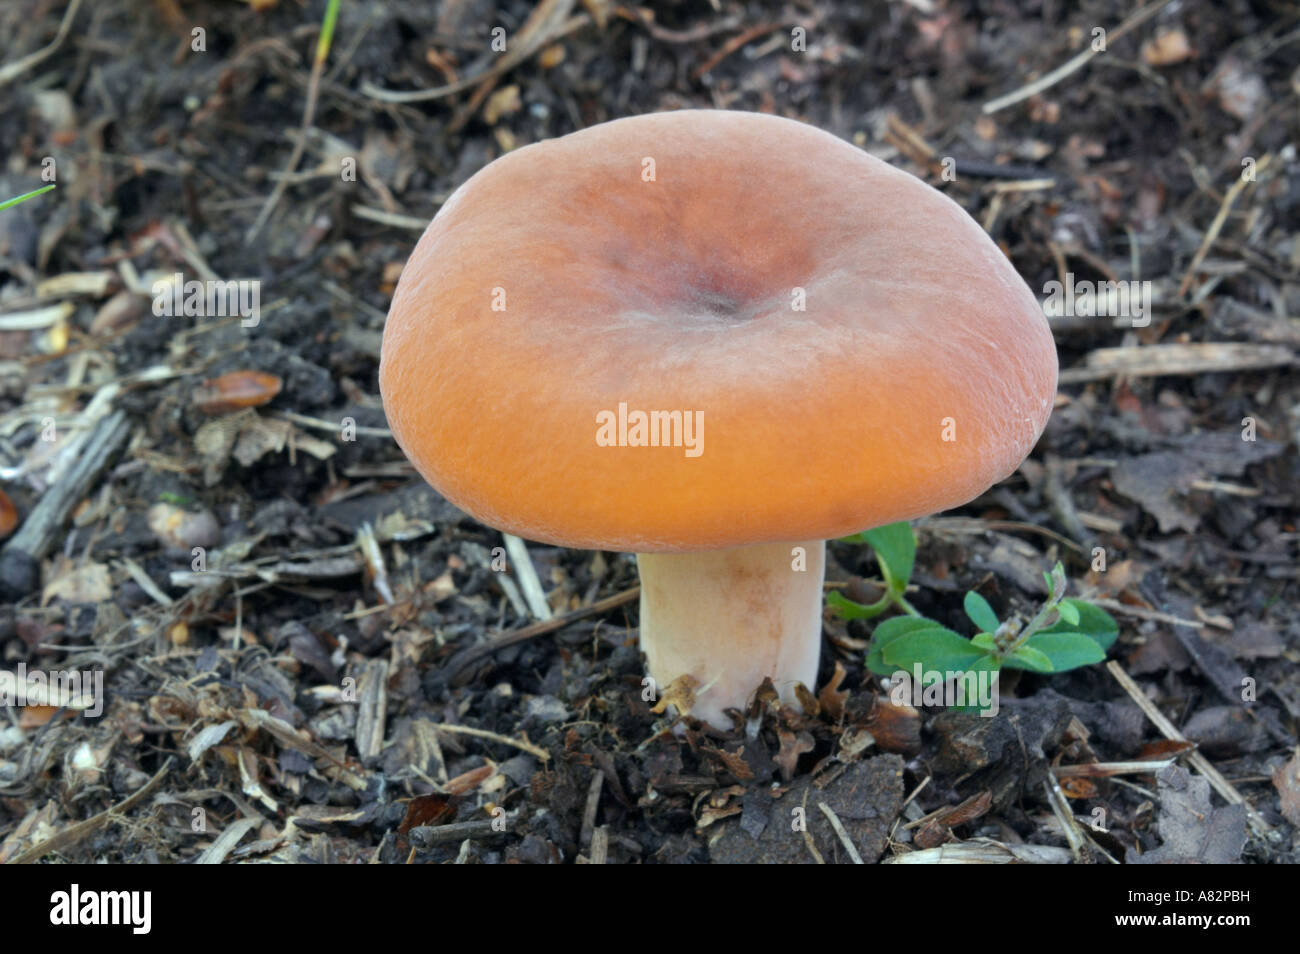 Lactarius volemus mushroom Stock Photo